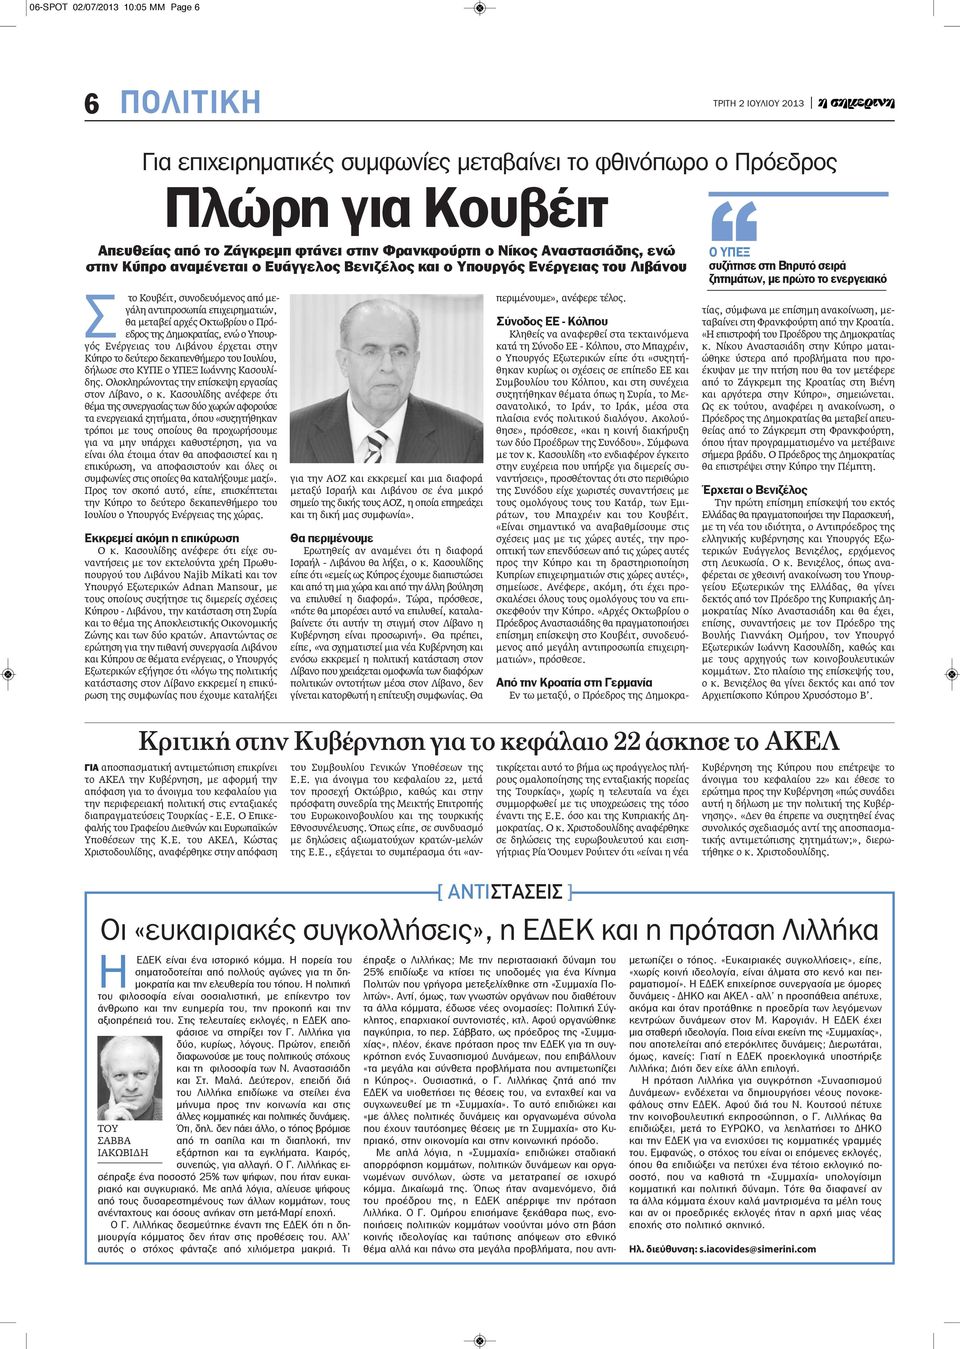 Πρόεδρος της Δημοκρατίας, ενώ ο Υπουργός Ενέργειας του Λιβάνου έρχεται στην Κύπρο το δεύτερο δεκαπενθήμερο του Ιουλίου, δήλωσε στο ΚΥΠΕ ο ΥΠΕΞ Ιωάννης Κασουλίδης.